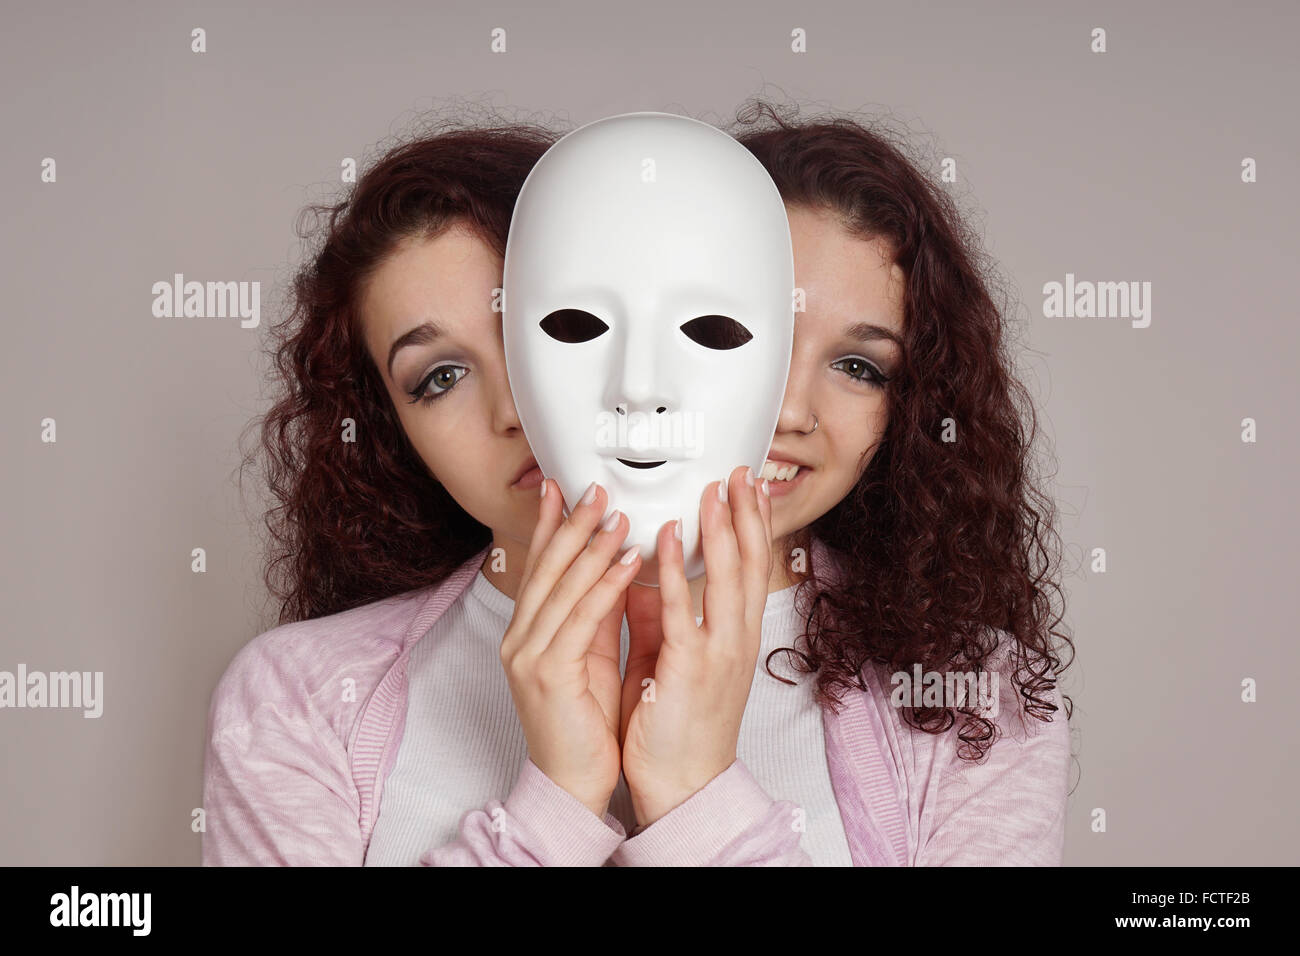 Deux visages femme maniaco-dépression concept Banque D'Images